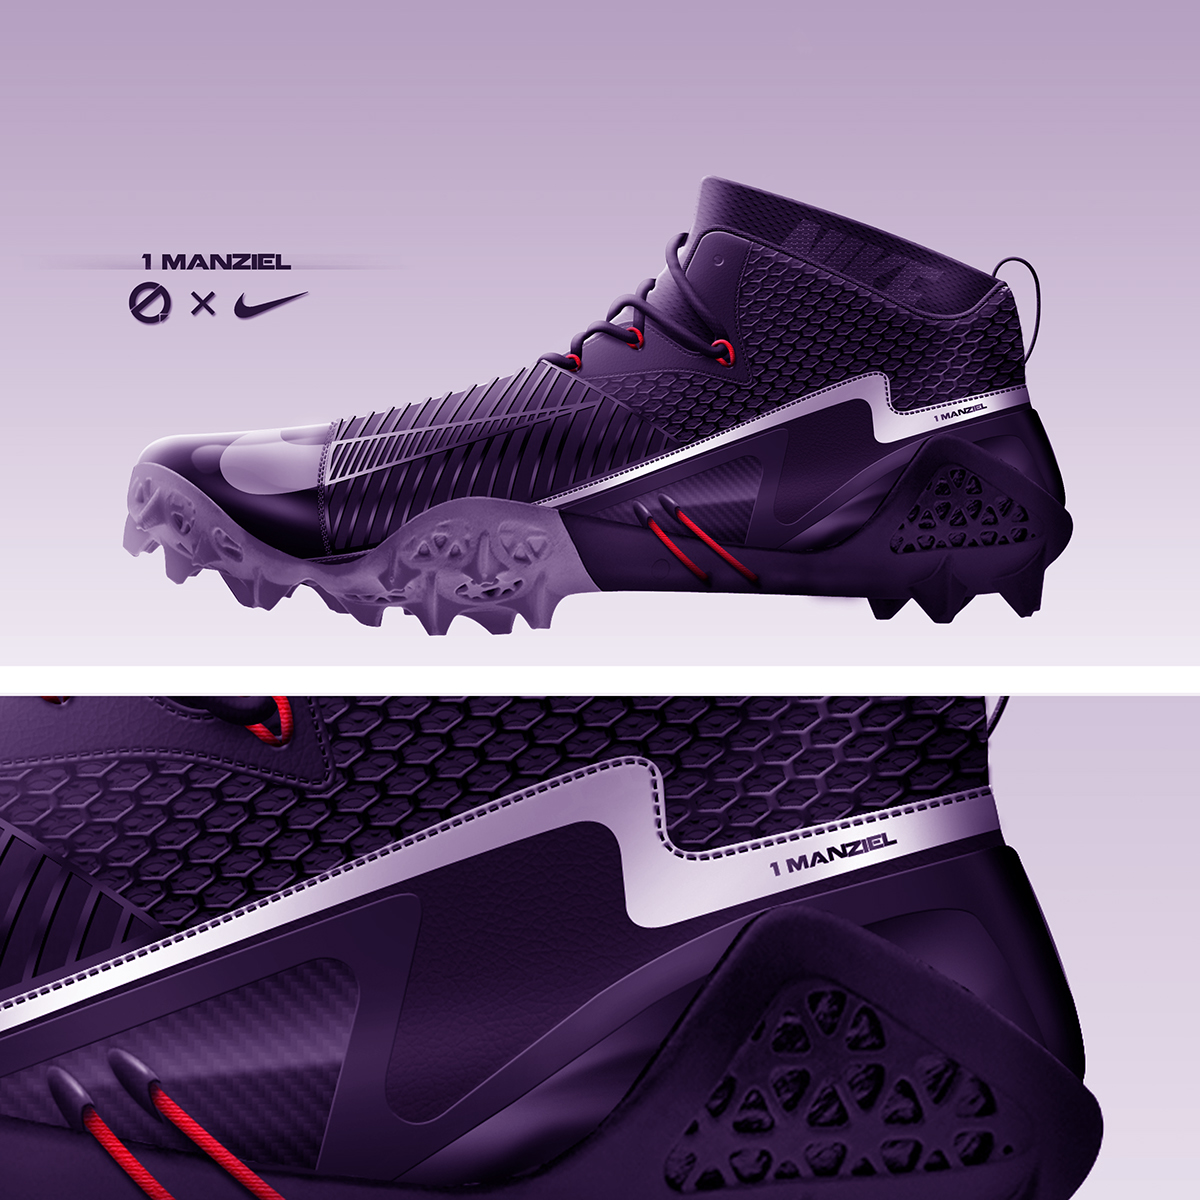 Johnny Manziel nfl superstar Cleveland Browns professional concept rendering footwear design footwear Carbon Fiber cleat football shoe design shoe designer quarterback